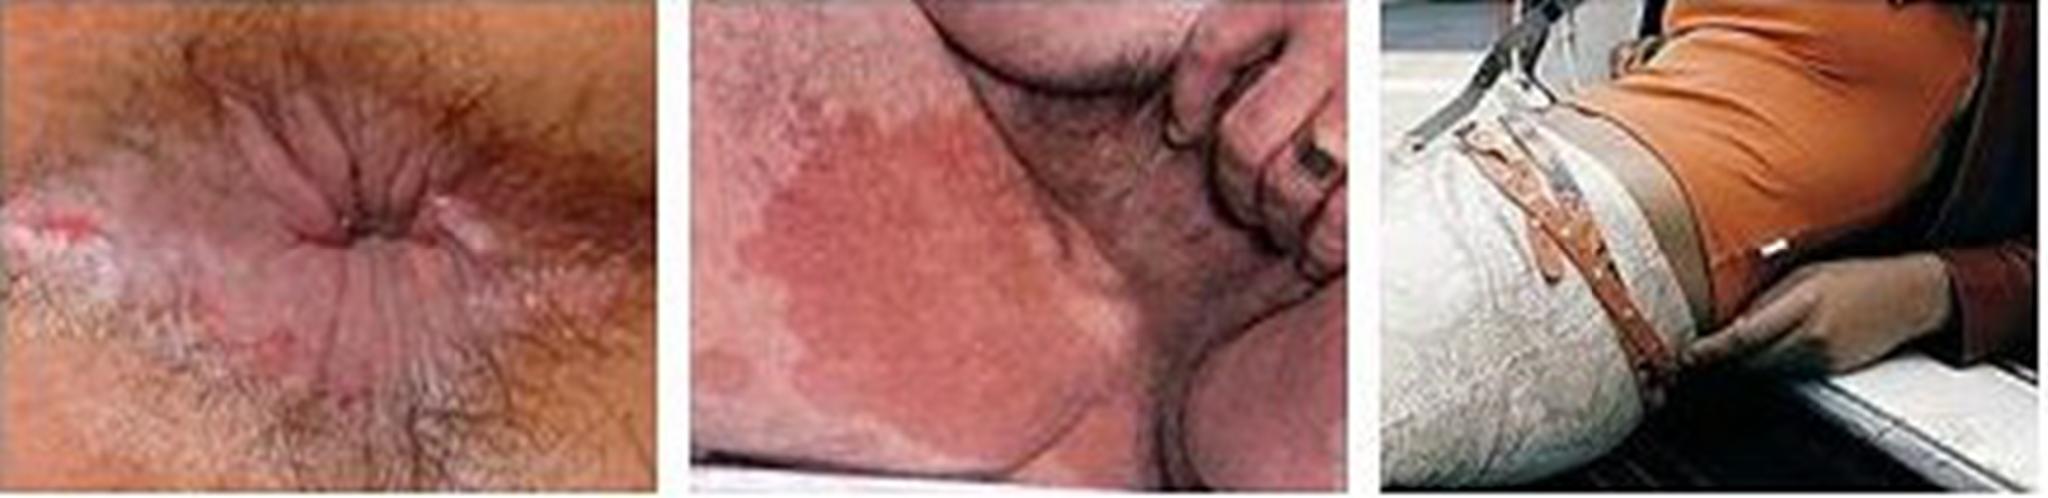 肛门湿疹示意图图片